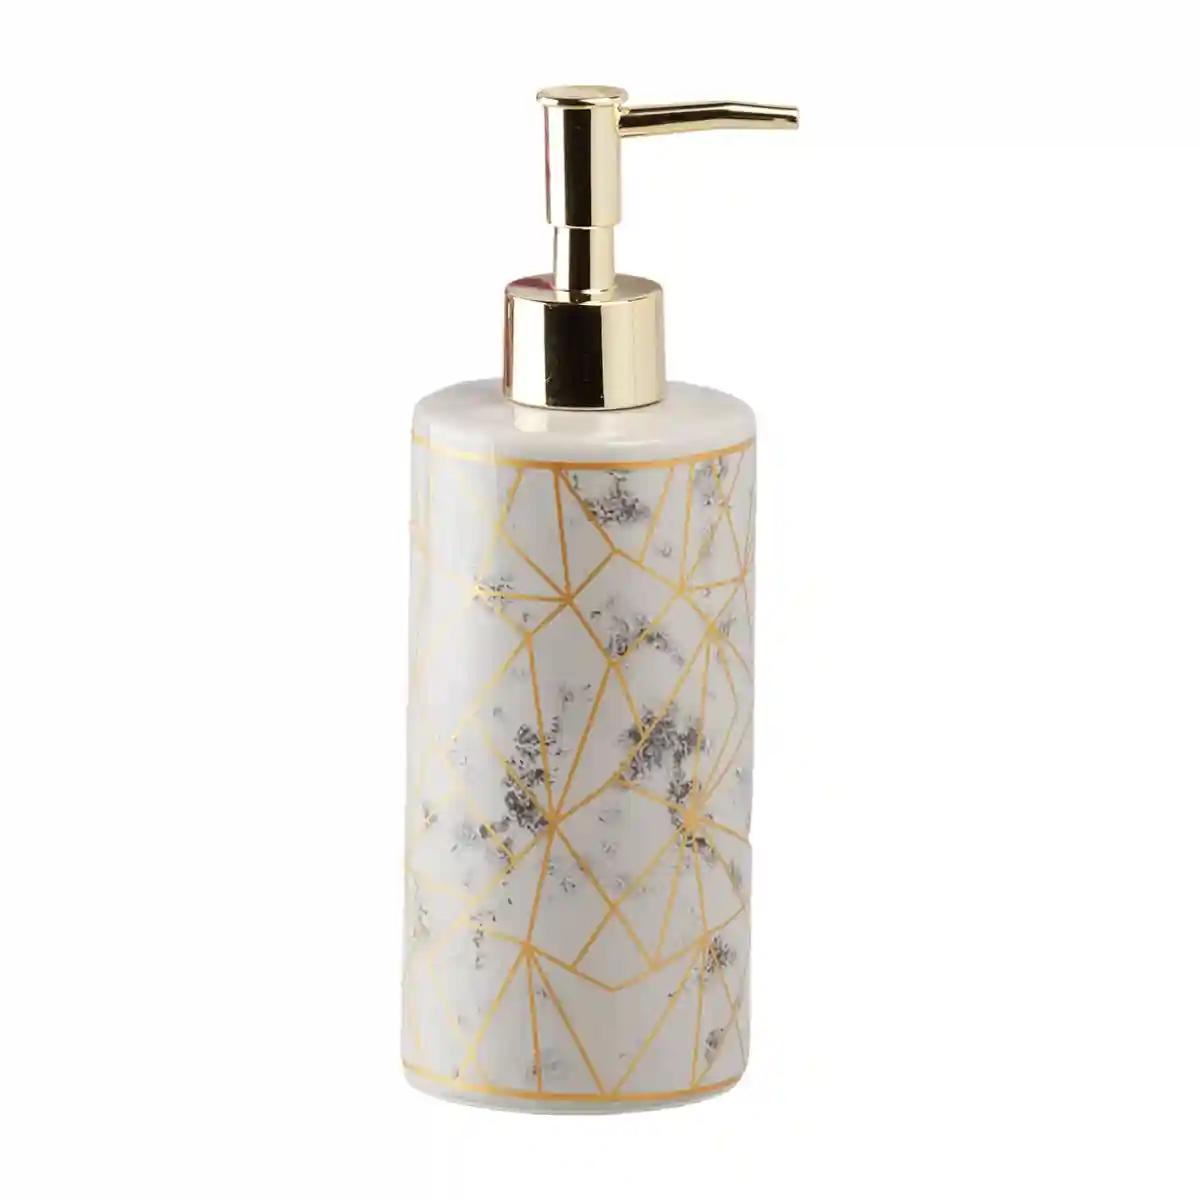 Kookee Ceramic Soap Dispenser for Bathroom handwash, refillable pump bottle for Kitchen hand wash basin, Set of 1 - Grey (10211)